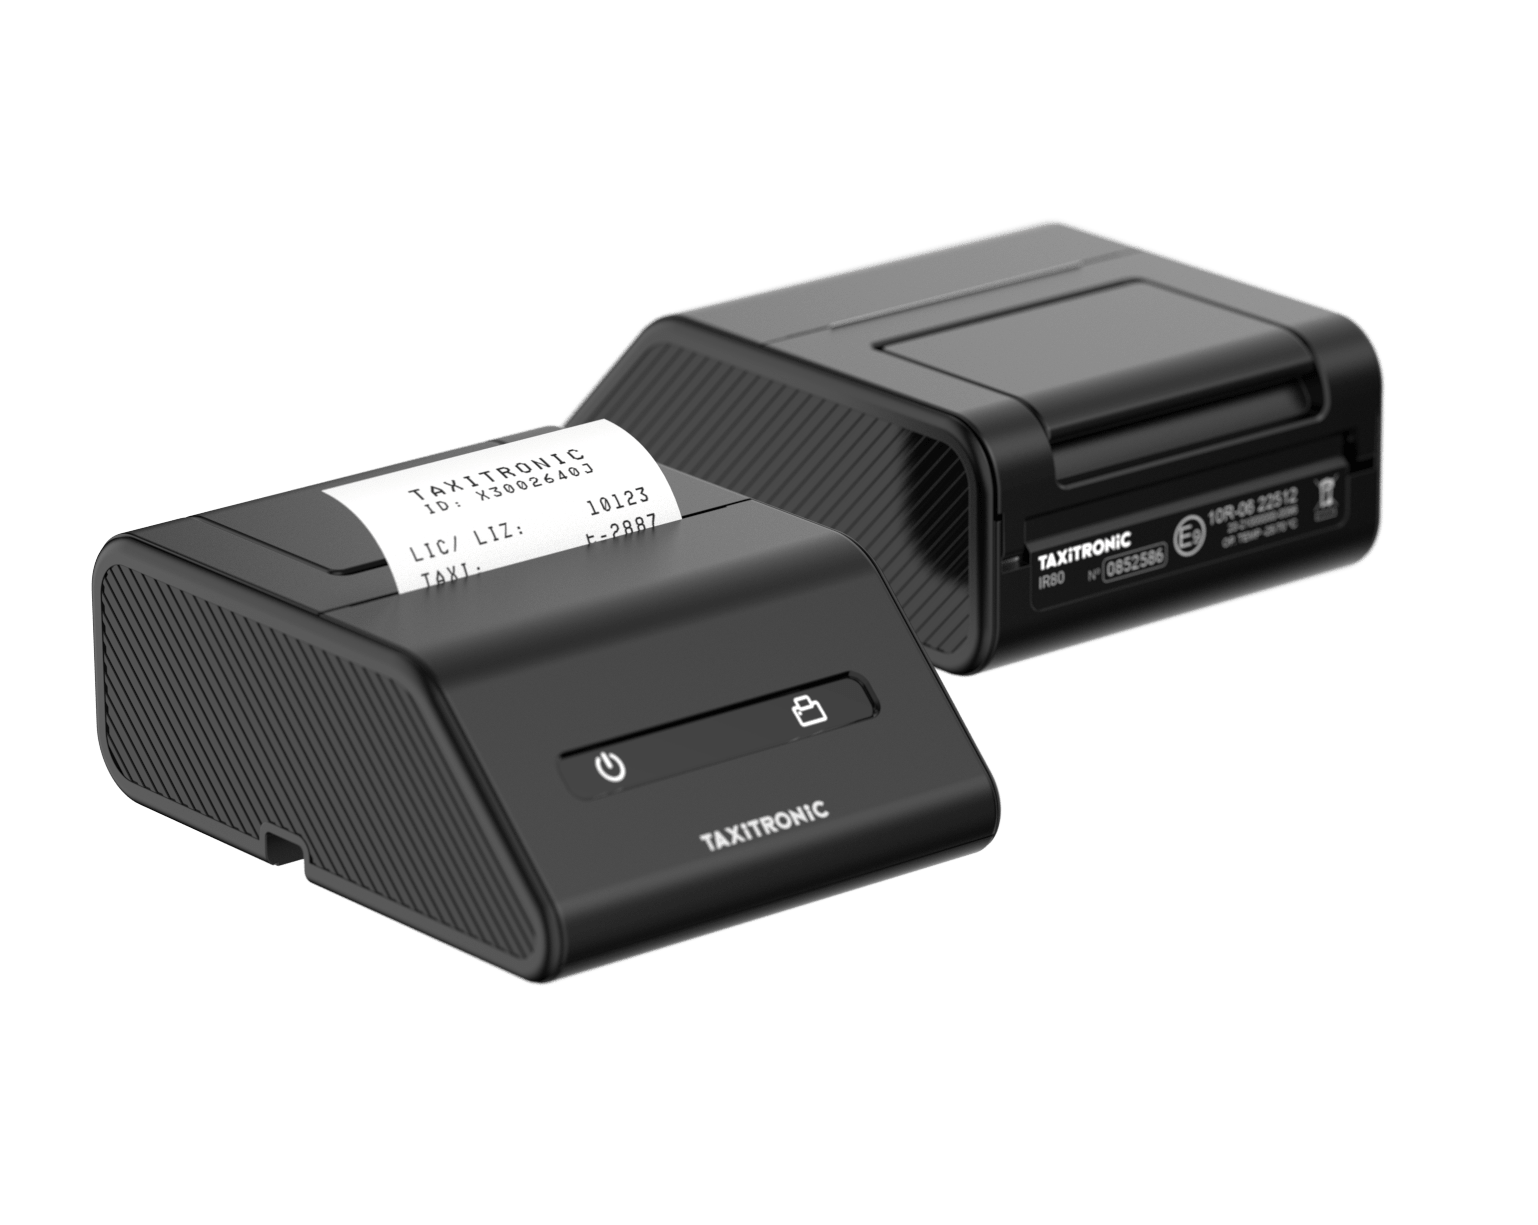 IR80 Taxi meter printer